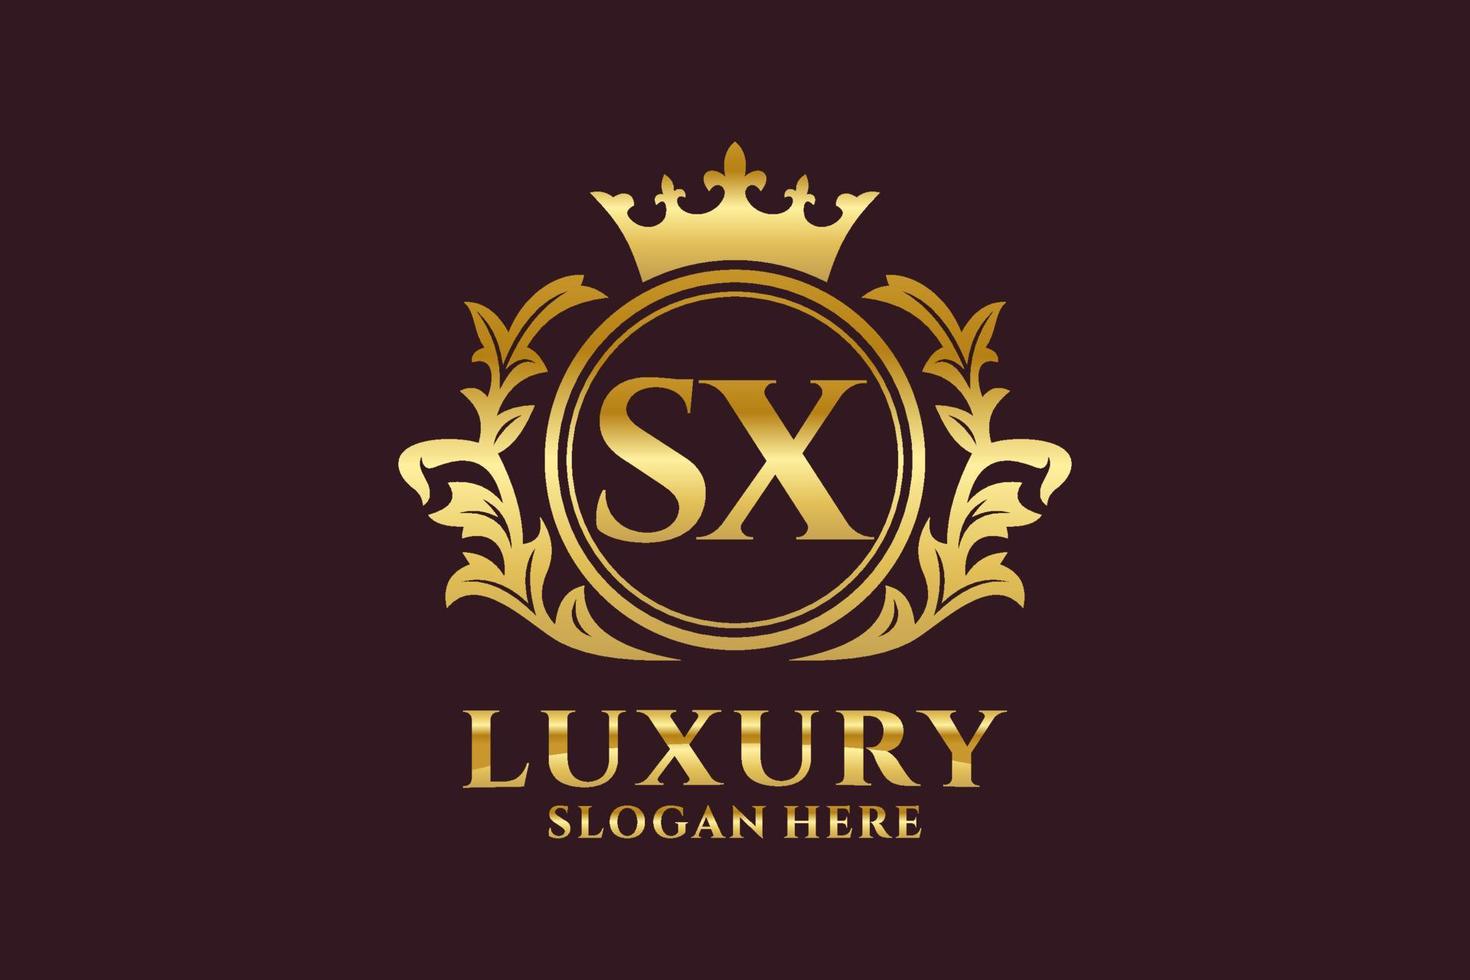 königliche luxus-logo-vorlage mit sx-anfangsbuchstaben in vektorgrafiken für luxuriöse branding-projekte und andere vektorillustrationen. vektor